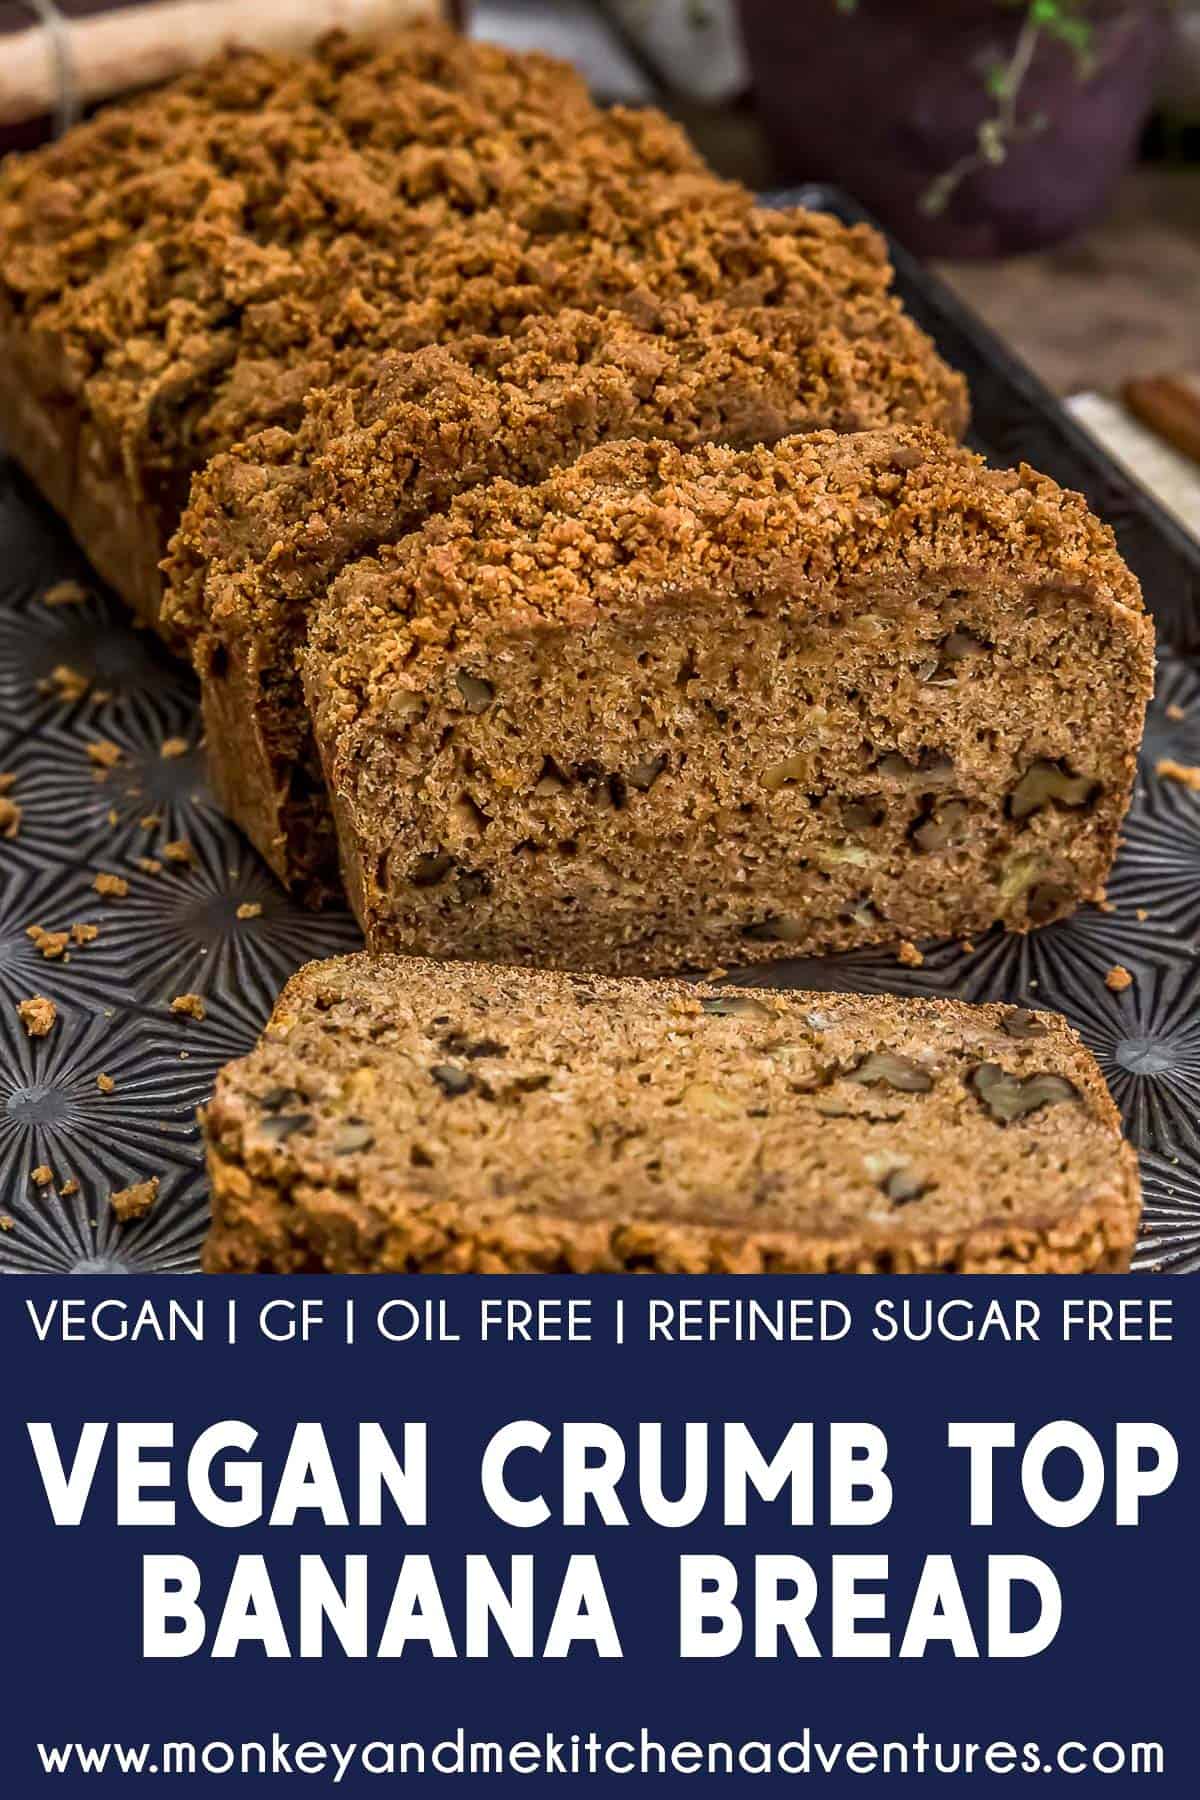 Vegan Crumb Top Banana Bread with text description